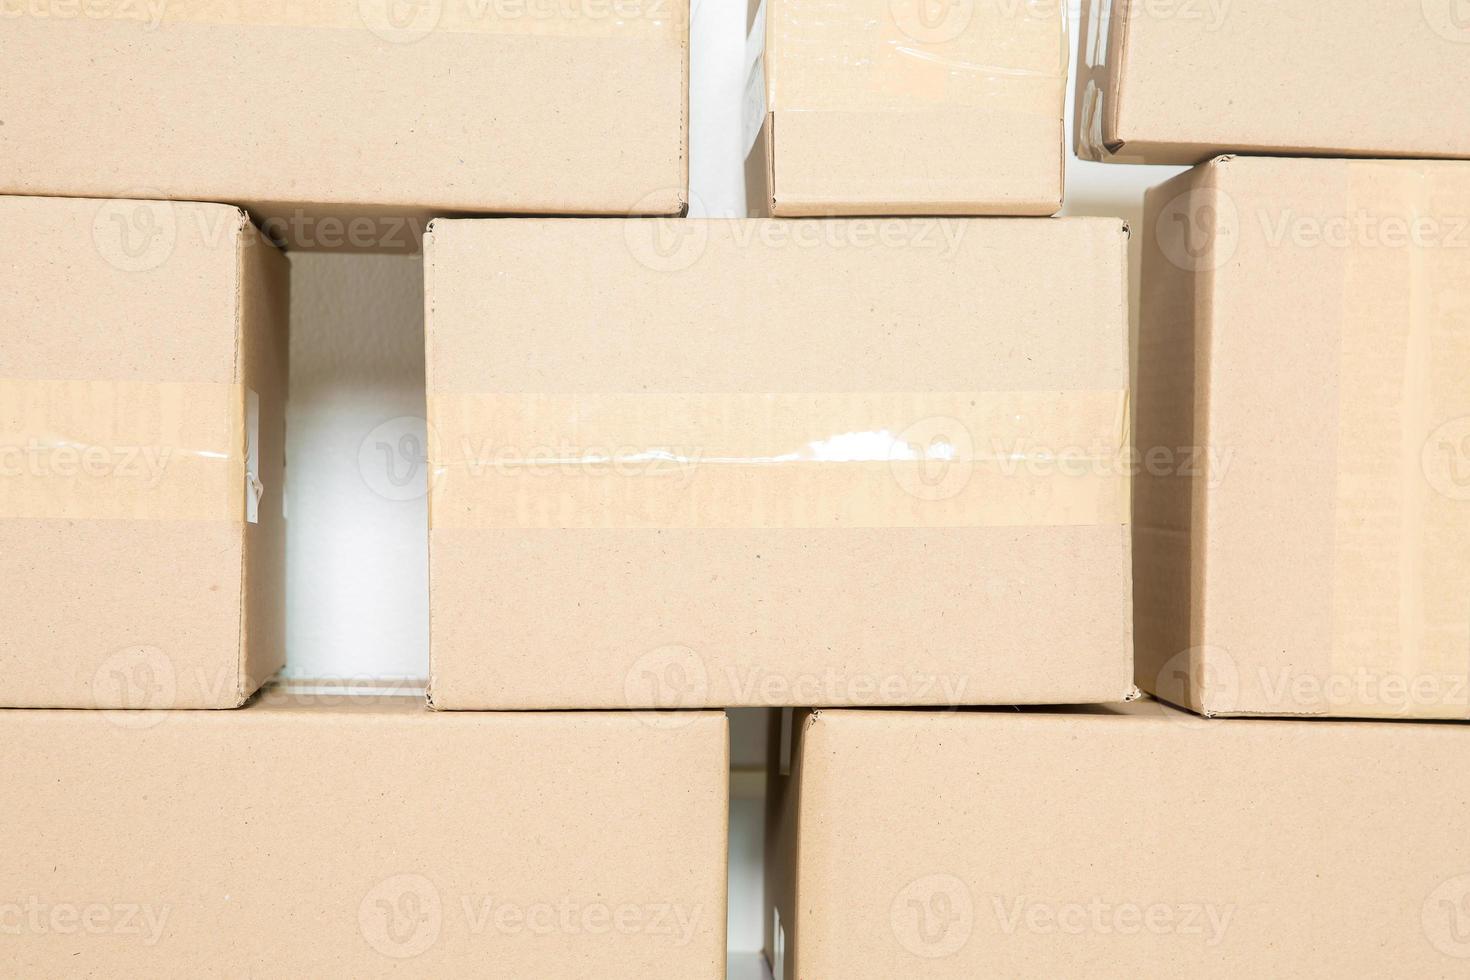 Stapel Kartons für den Umzug, leerer Raum mit weißer Wand und Kartons mit Barcode ohne Marke auf dem Boden. Lieferung von Waren, Einkaufen. pappkartons auf grauem wandhintergrund. foto